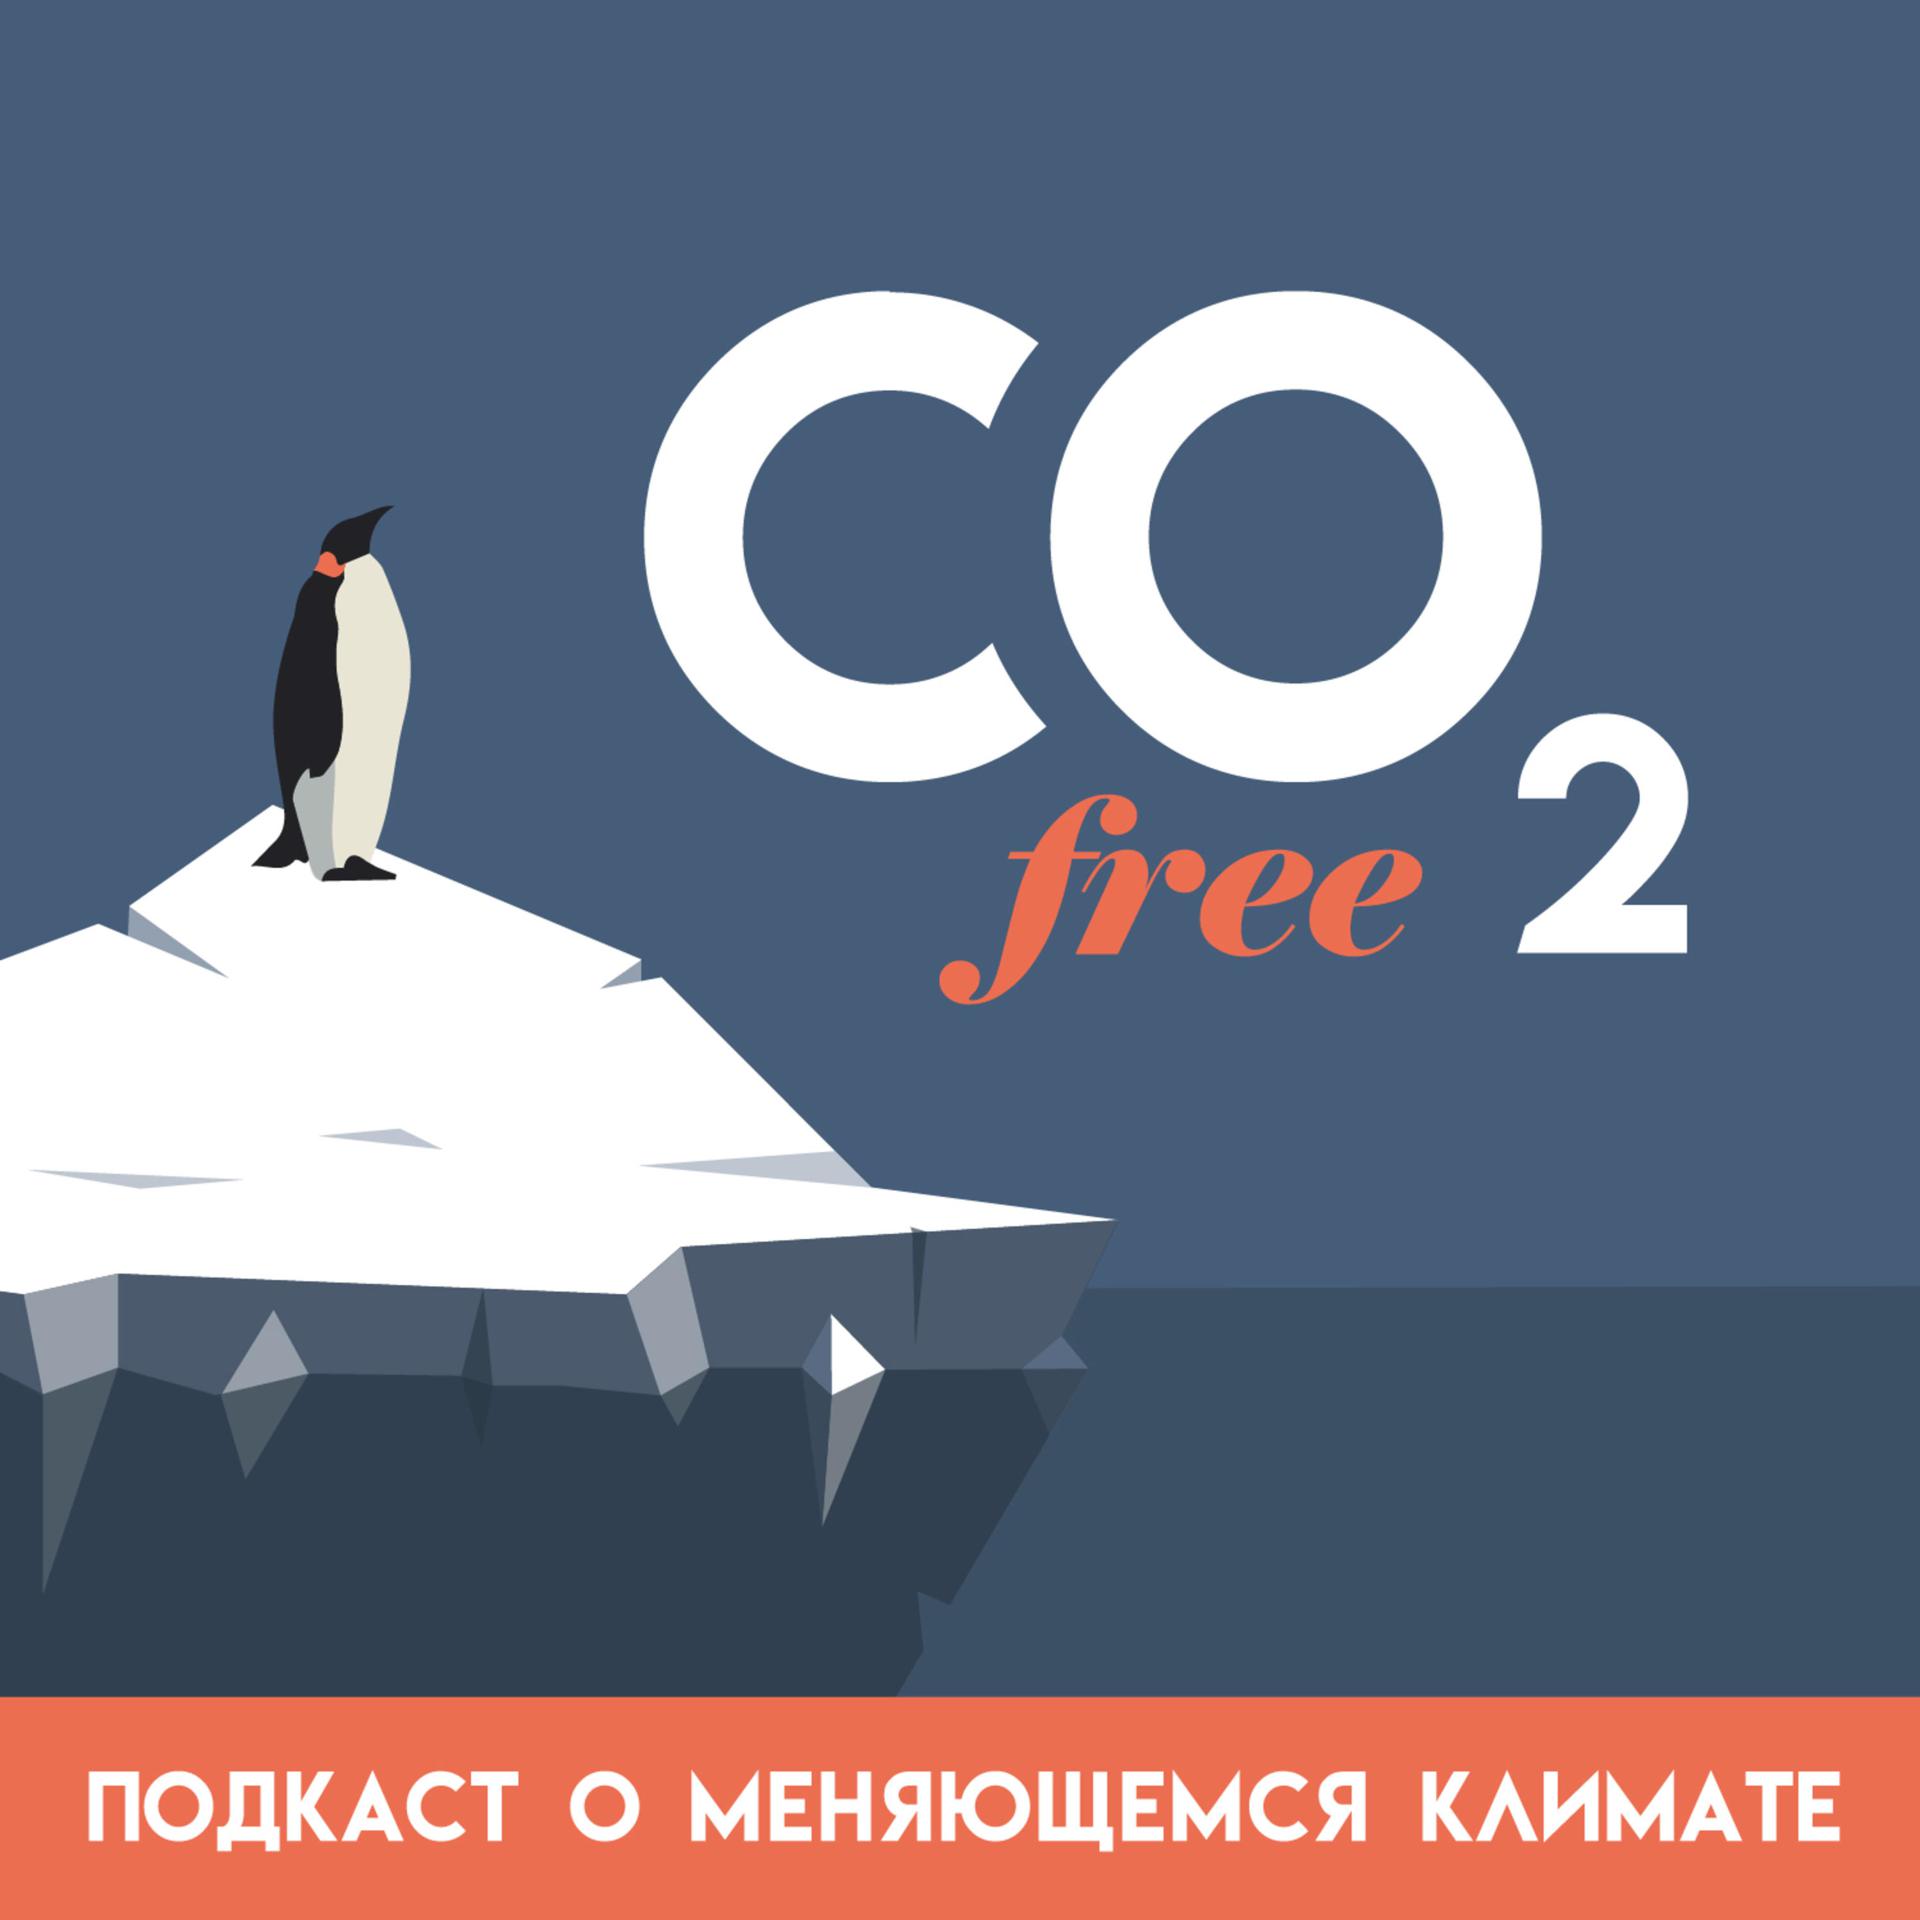 #8 CO₂-free разговор о том, чем изменение климата угрожает Байкалу, с Дарьей Бедулиной